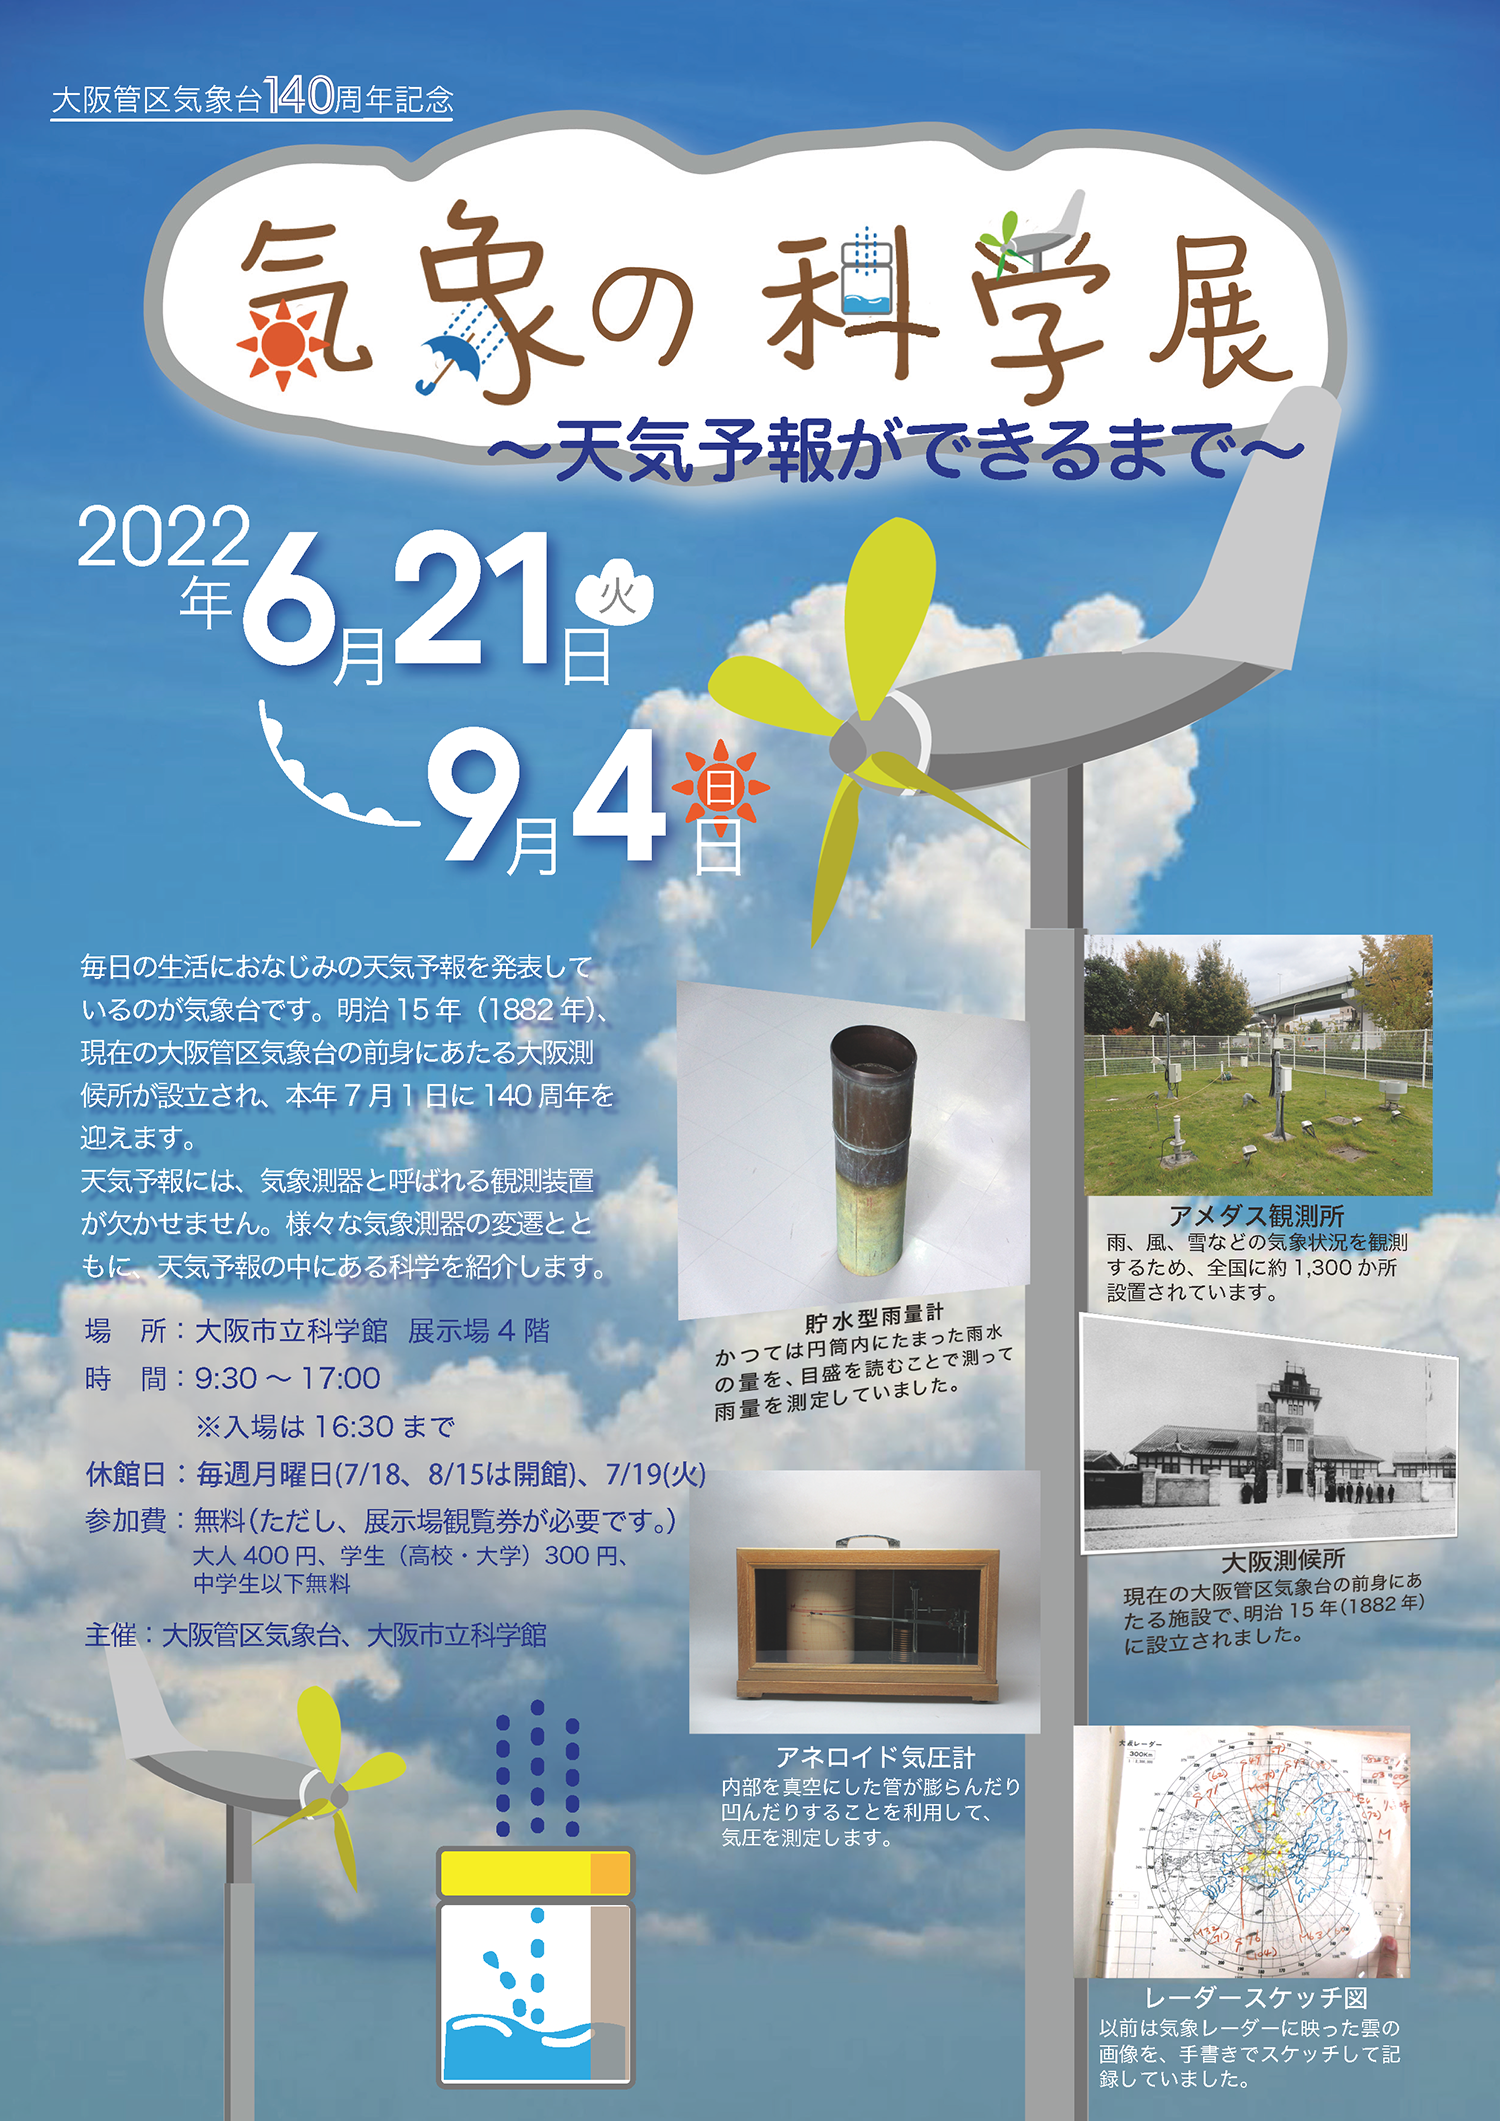 企画展「大阪管区気象台140周年記念 気象の科学展 ～天気予報ができるまで～」